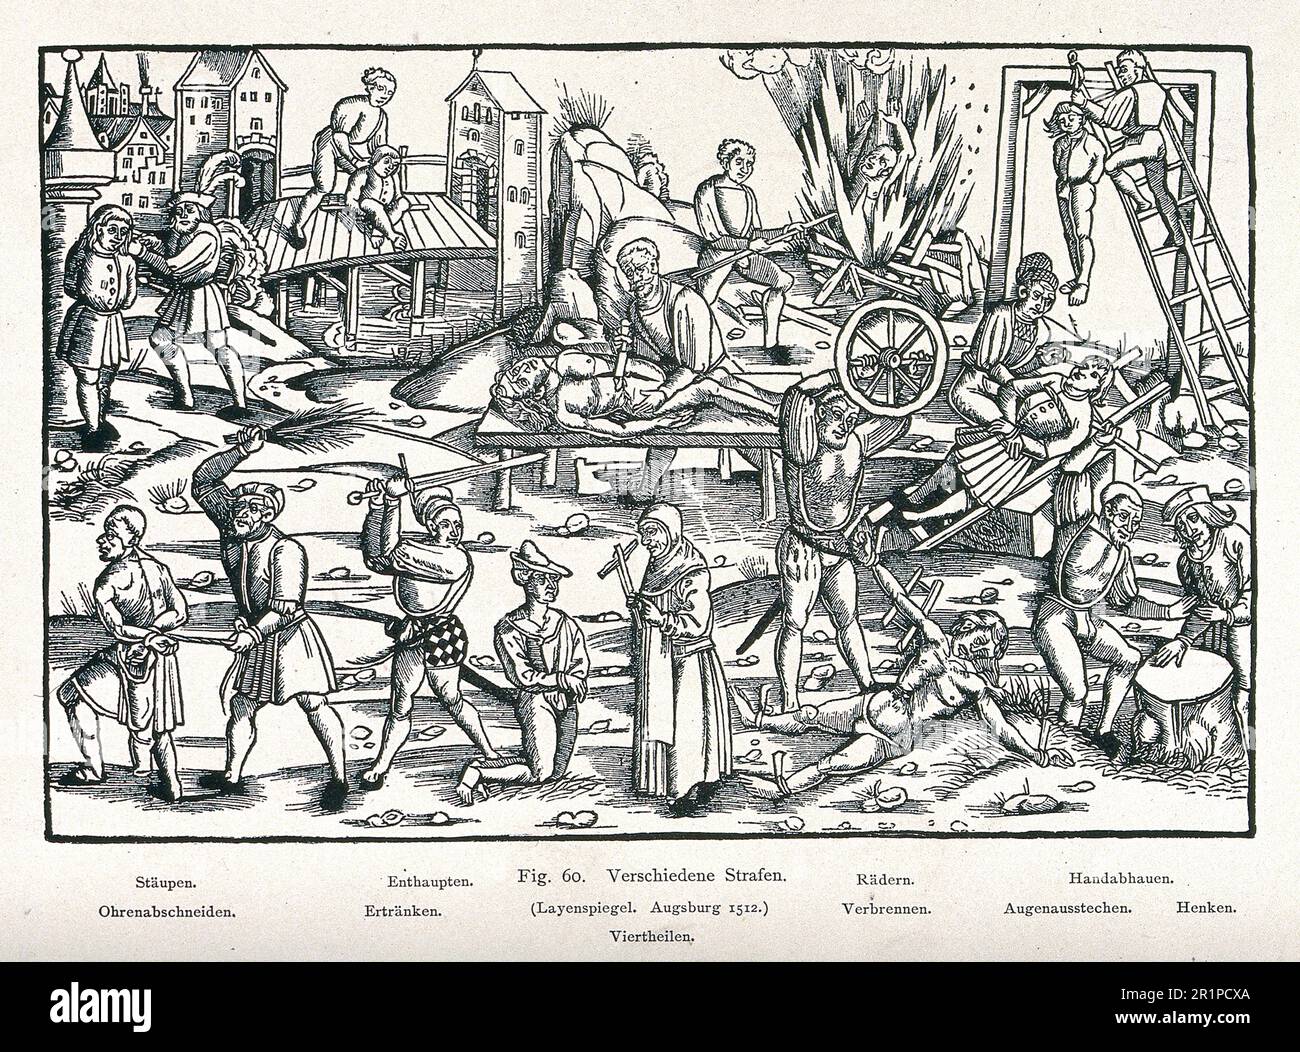 Diverses formes de mutilation et de torture, y compris la flagellation, la décapitation, la brûlure, la pendaison, noyade, cantonnement, coupure des mains et des oreilles et empaillement sur la crémaillère. L'image fait partie d'un Layenspiel, une illustration pour un livre pour le profane instruit, d'Augsbourg de 1512, Allemagne, historique, restauré numériquement reproduction d'un 19th siècle original / Verschiedene Formen der Verstümmelung und Folter, darunter Geißelung, Enthauptung, Verbrennung, Erhängen, Betrieb einer Bürgen, Reparaturen, Reparaturen und Vertrieb von Dienstleistungen. DAS Bild ist Teil eines Layenspiels, Banque D'Images